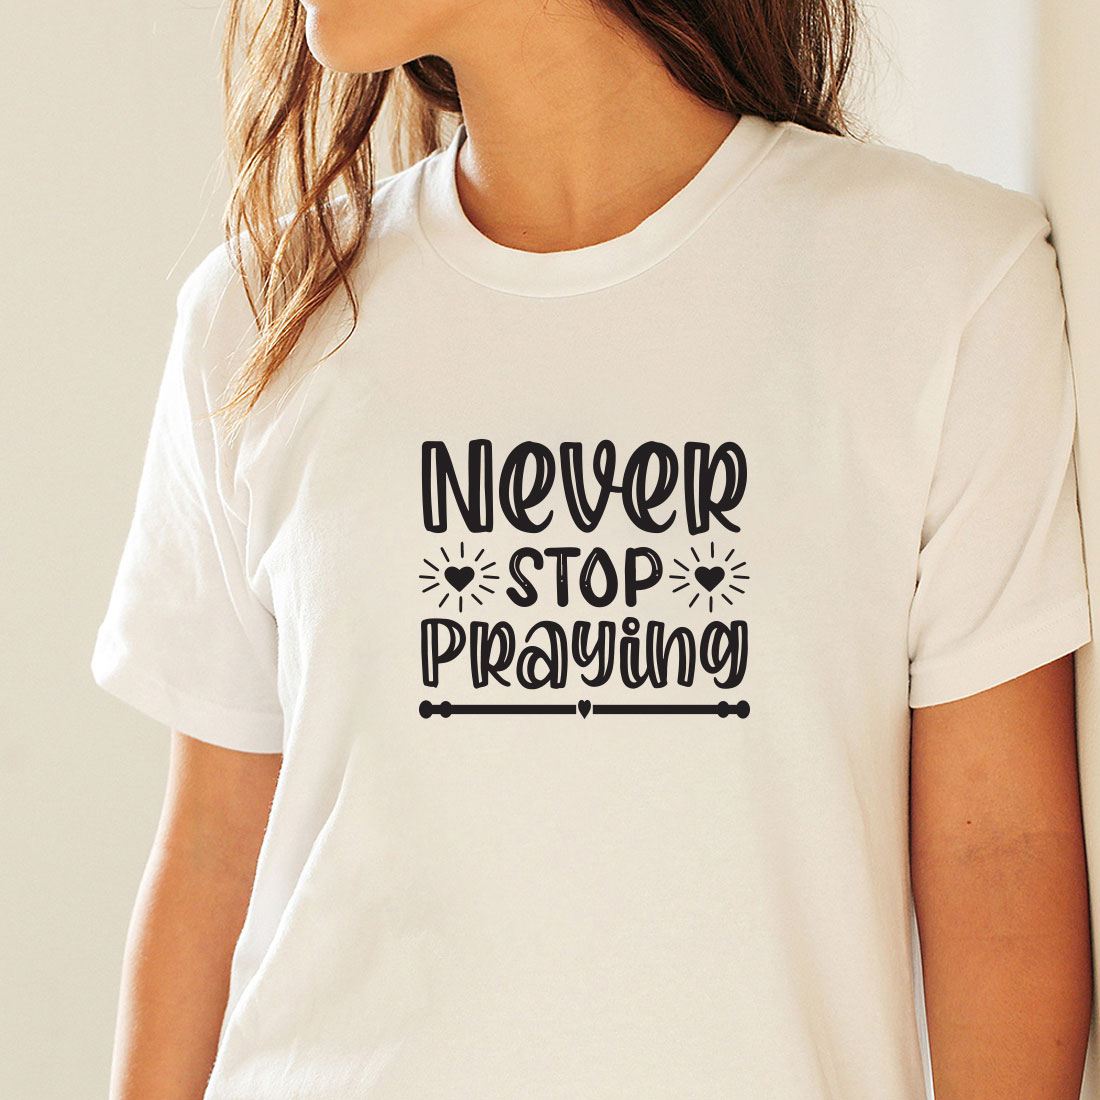 Religious T-shirt Design Bundle Vol-4 preview image.